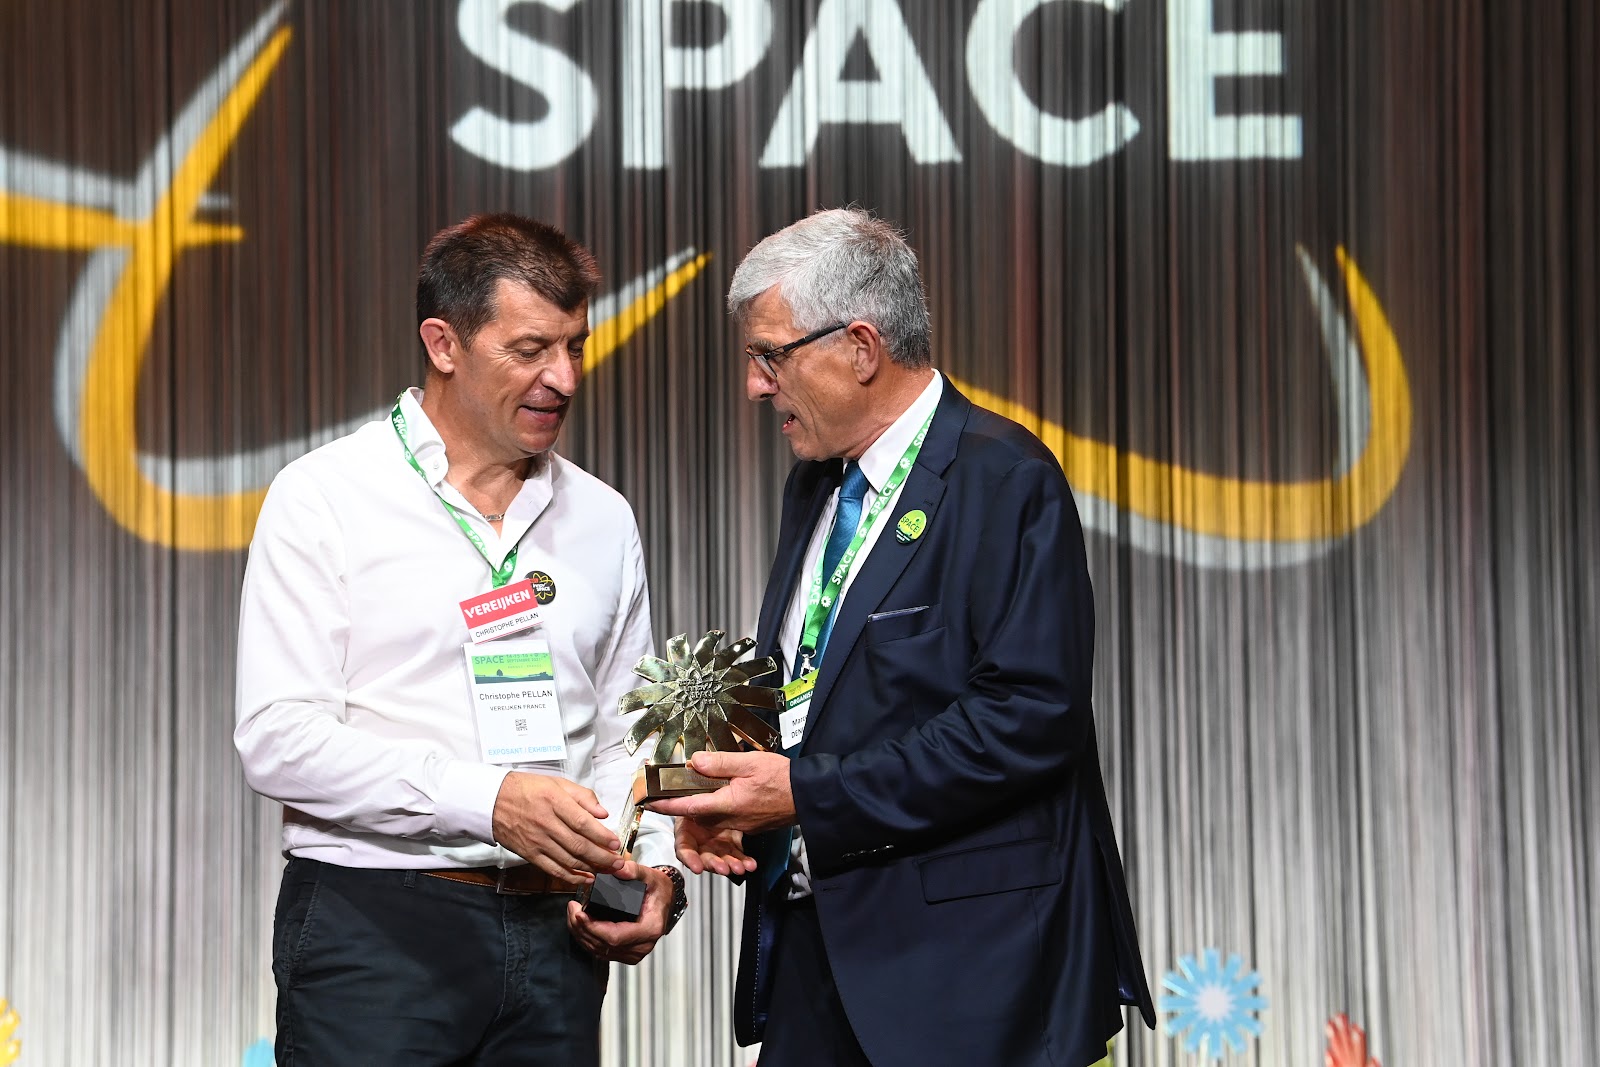 Vereijken France received Innov'Space trophy